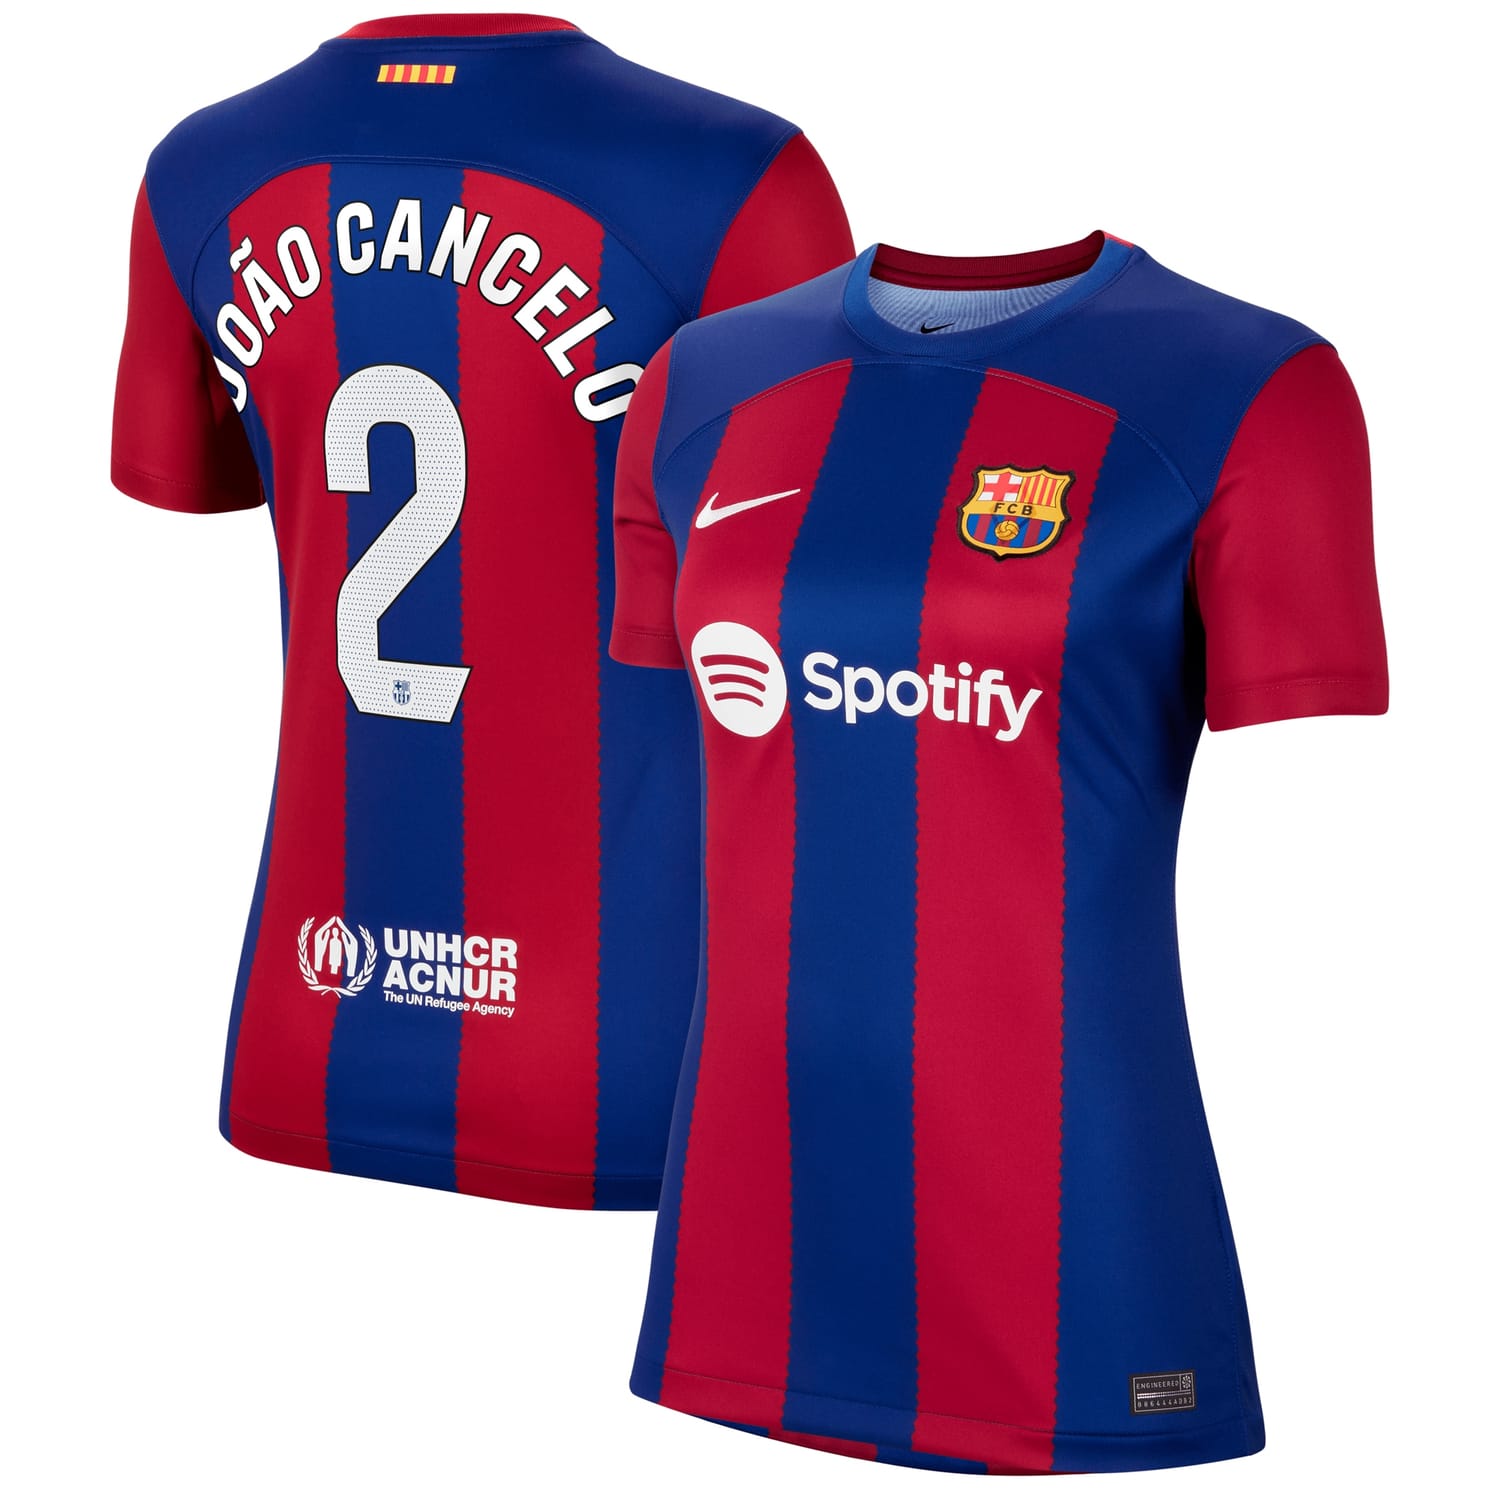 La Liga Barcelona Home Jersey Shirt Royal 2023-24 player Joao Cancelo printing for Women